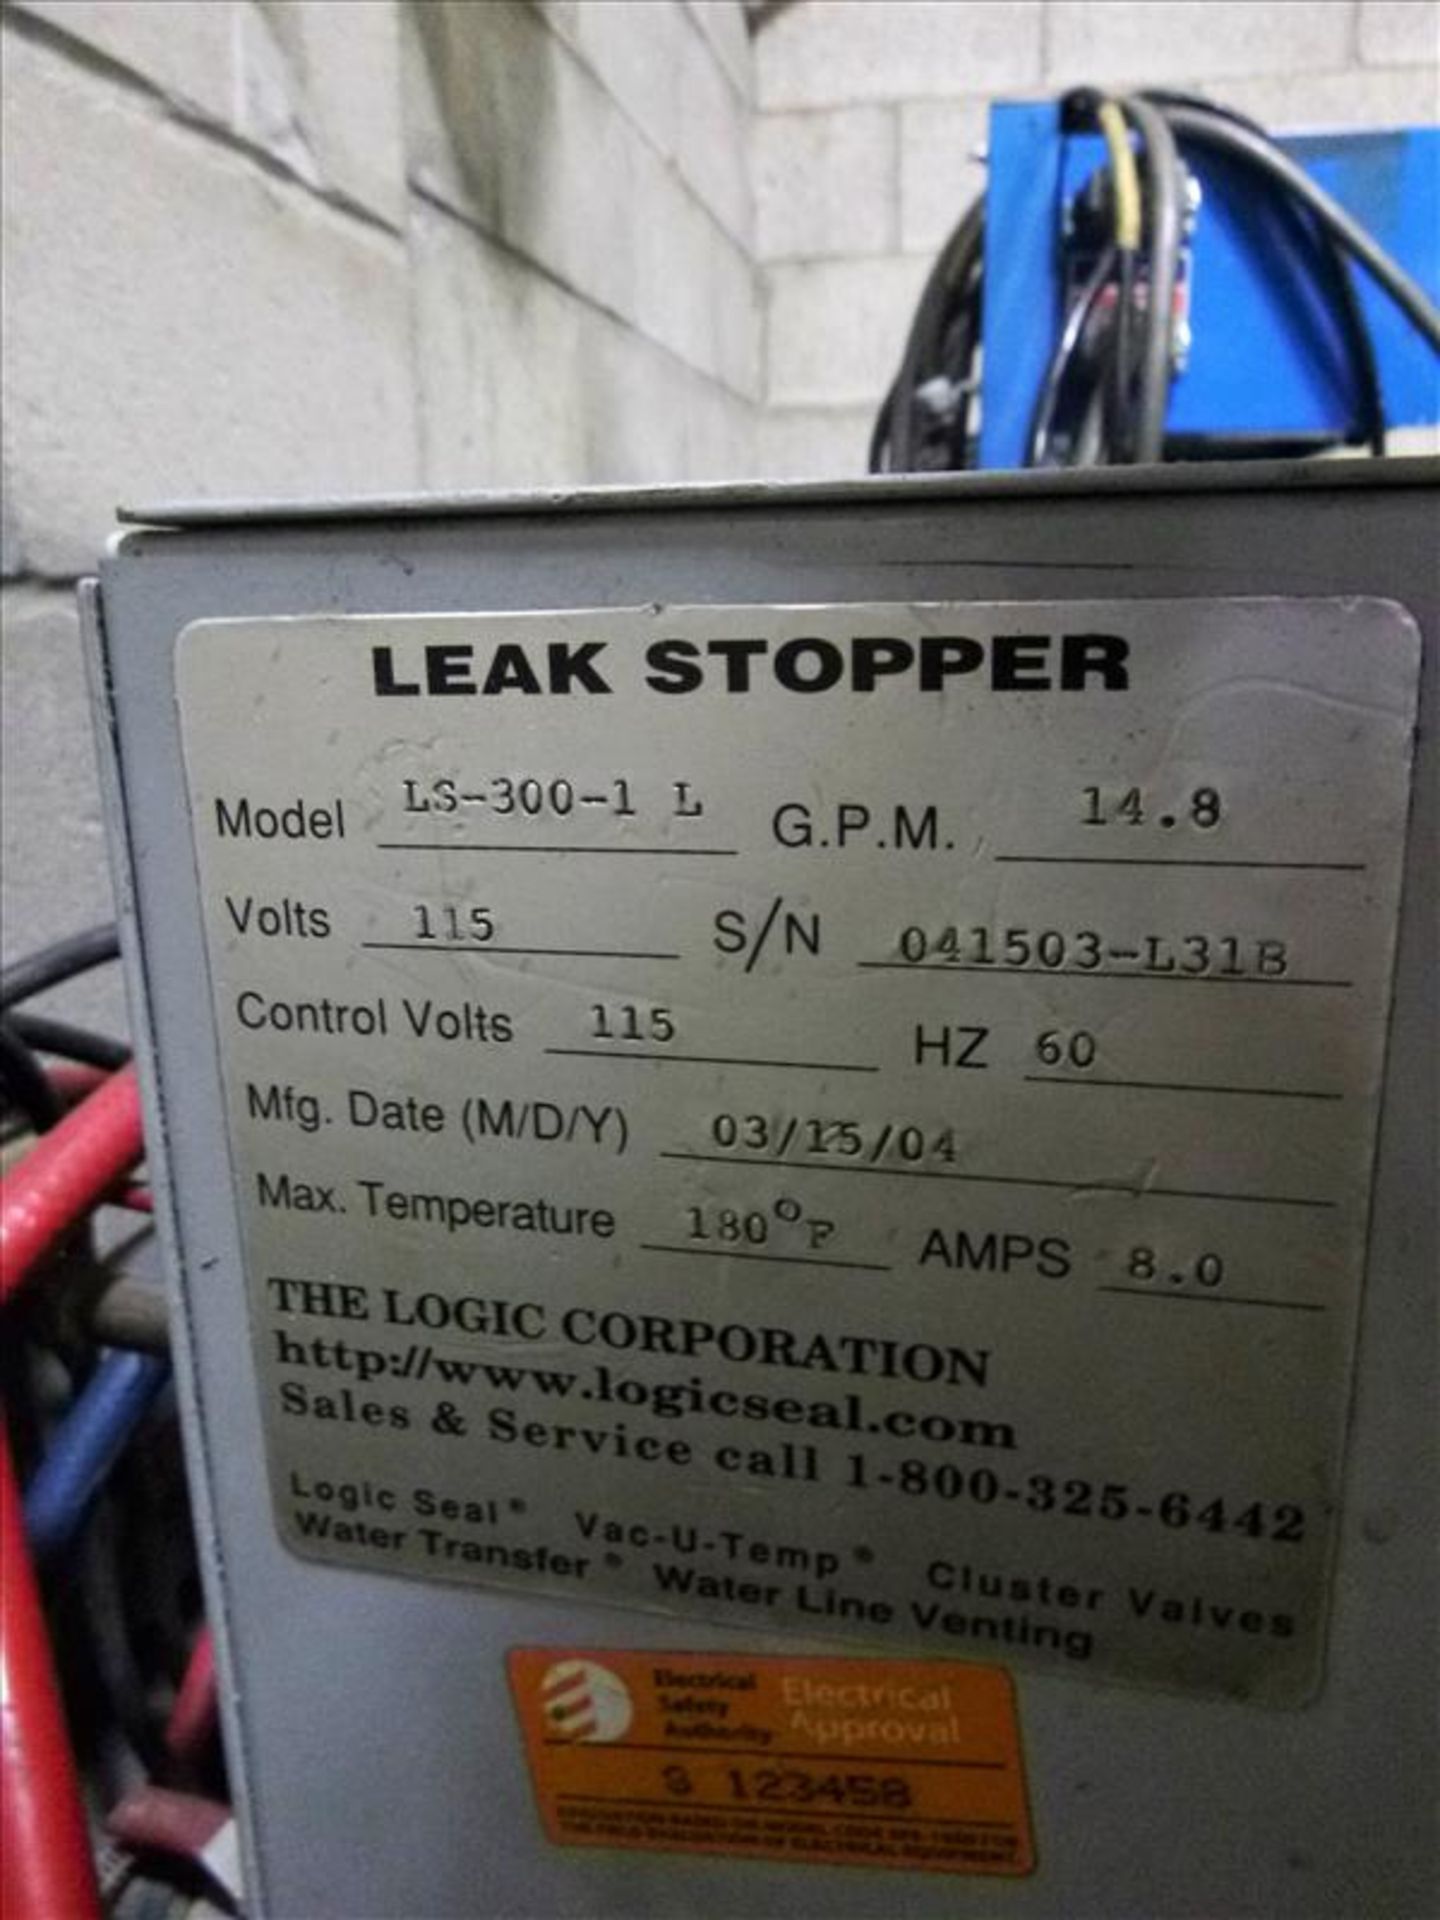 LogicSeal mod. LS-300-1 L Leak Stopper ser. no. 041503-L318 (2015) - Image 2 of 2